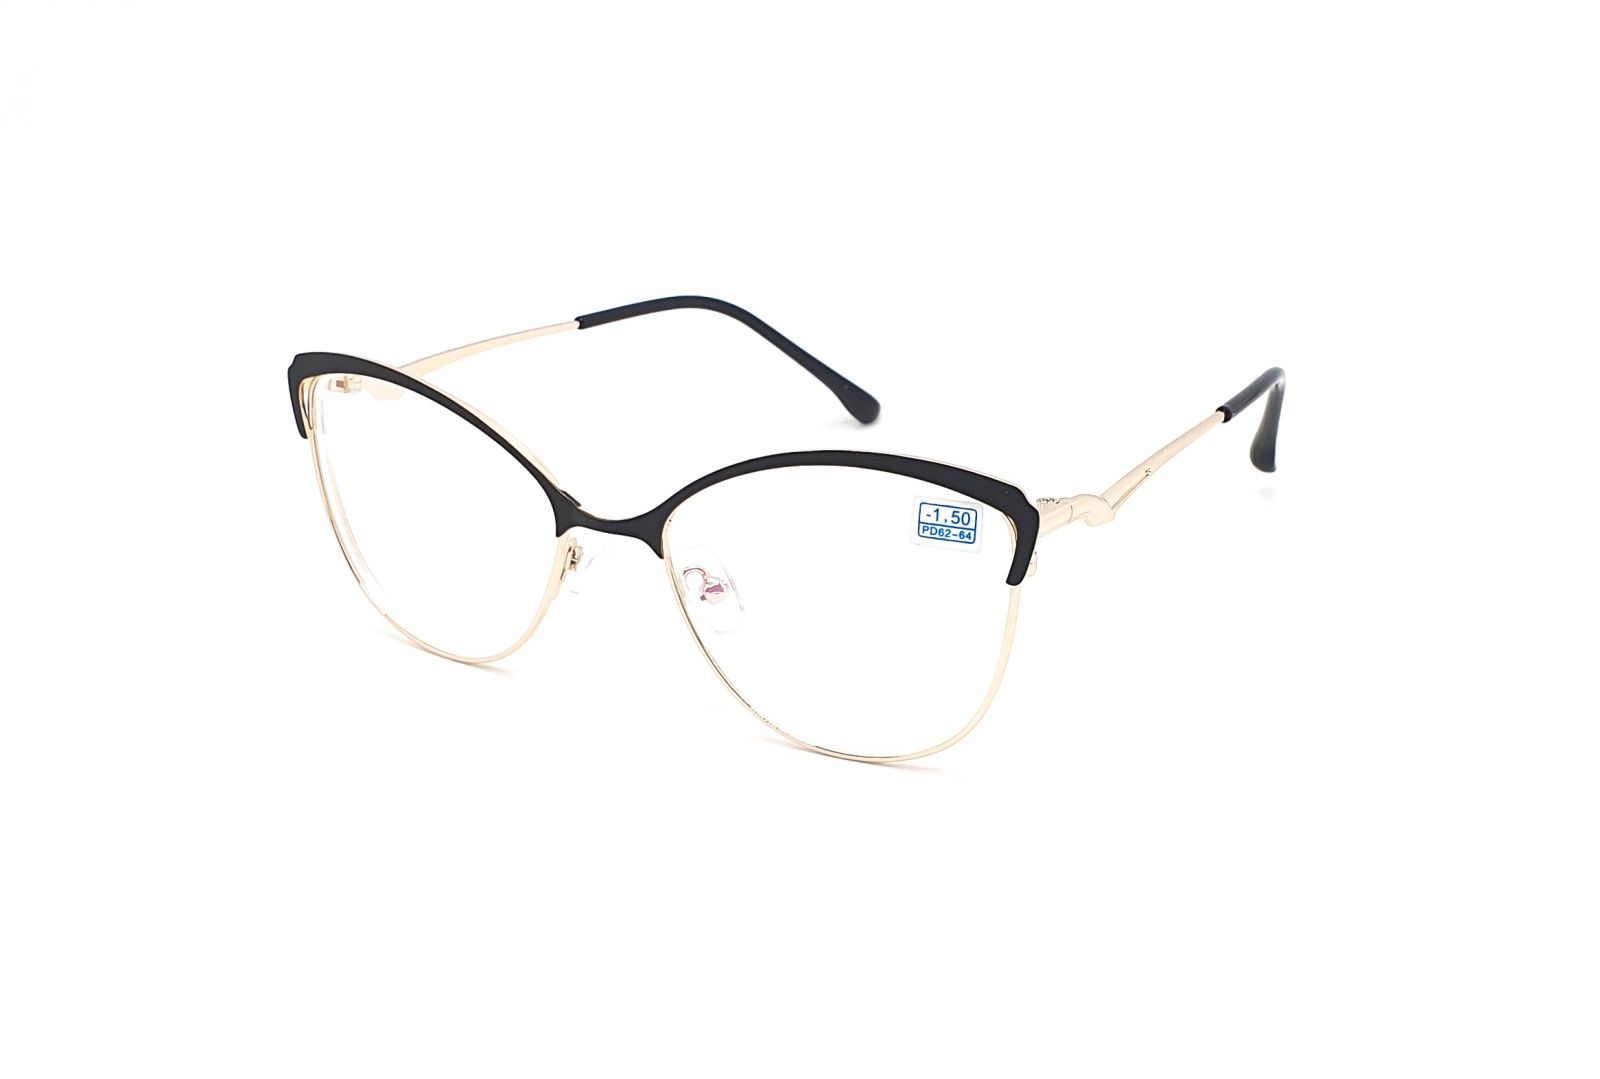 Dioptrické brýle 850 / -4,50 black/gold s antireflexní vrstvou